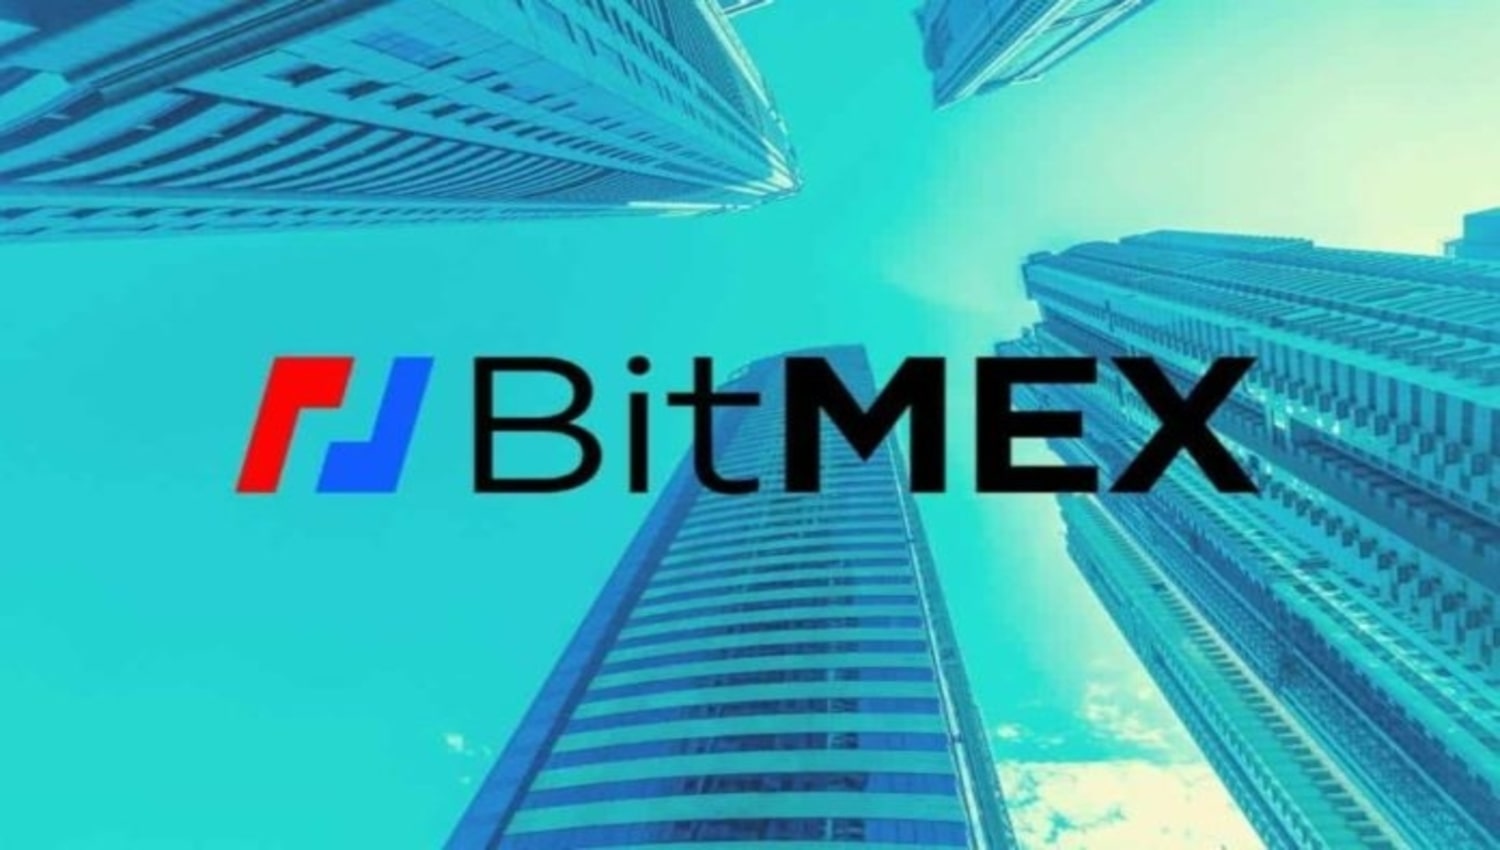 مدیر سابق بانک چین به هیئت مدیره شرکت BitMEX پیوست